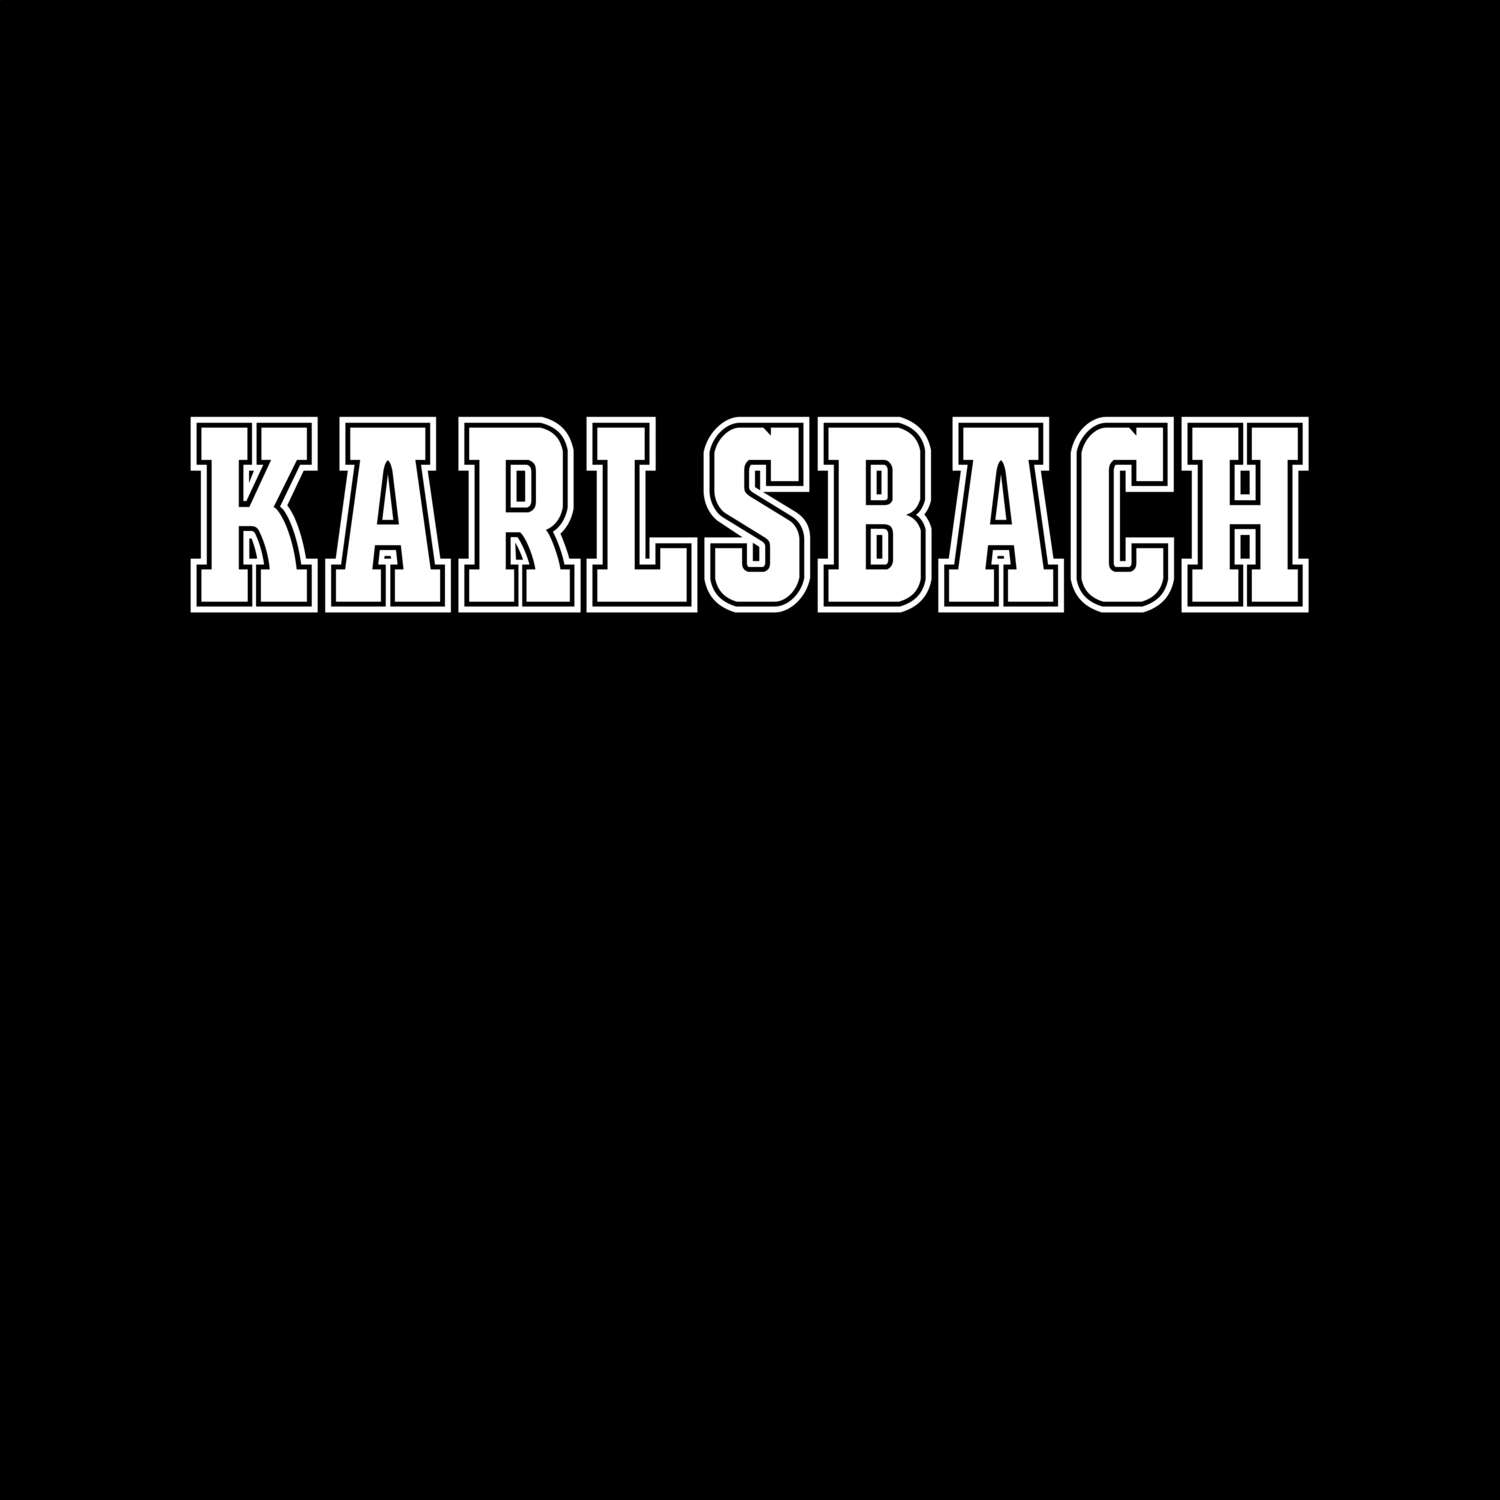 Karlsbach T-Shirt »Classic«